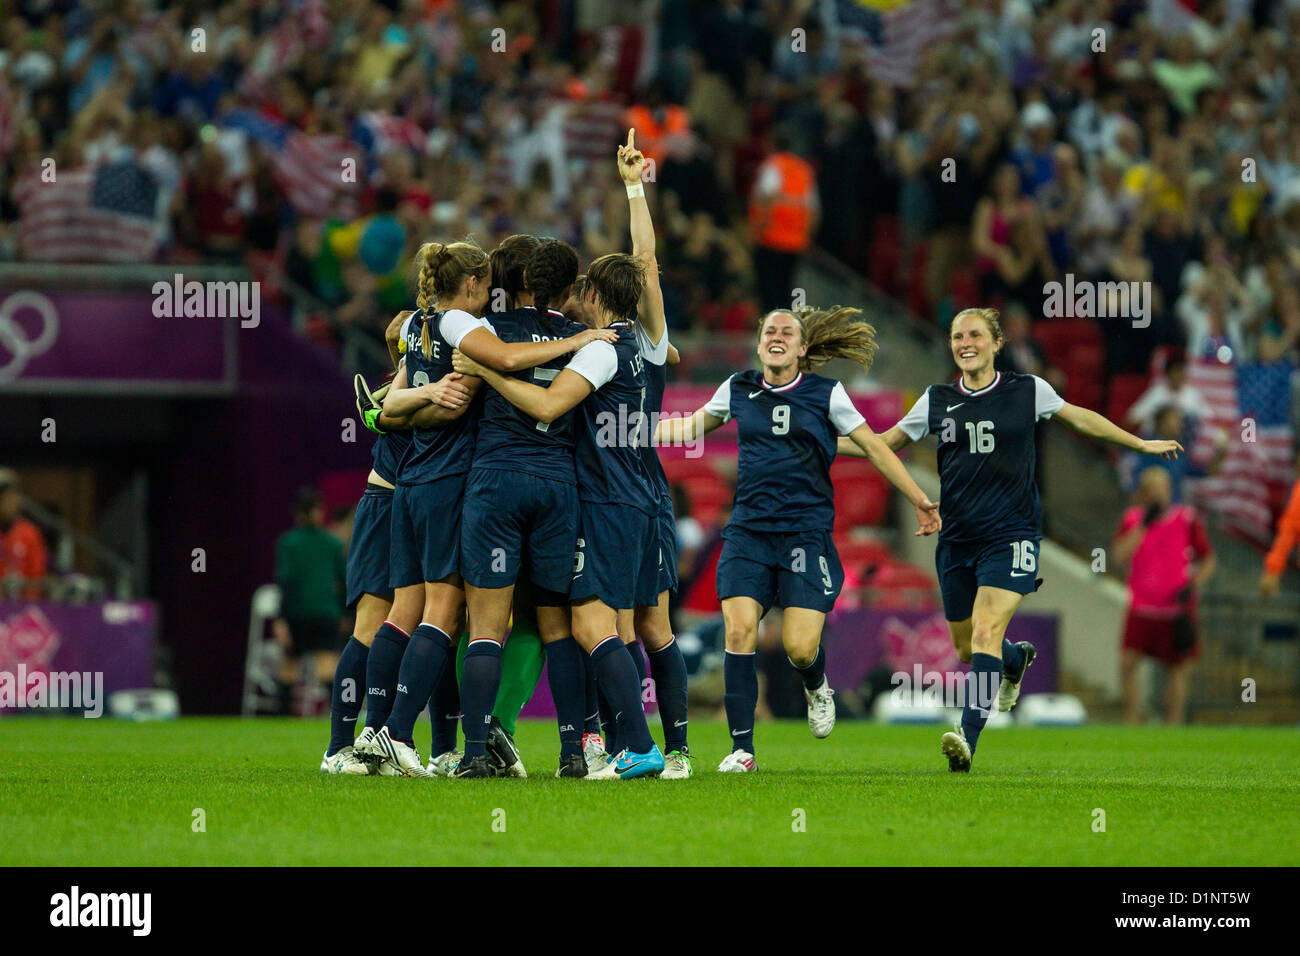 USA remporte l'or sur le Japon en femmes Football (soccer) aux Jeux Olympiques d'été, Londres 2012 Banque D'Images